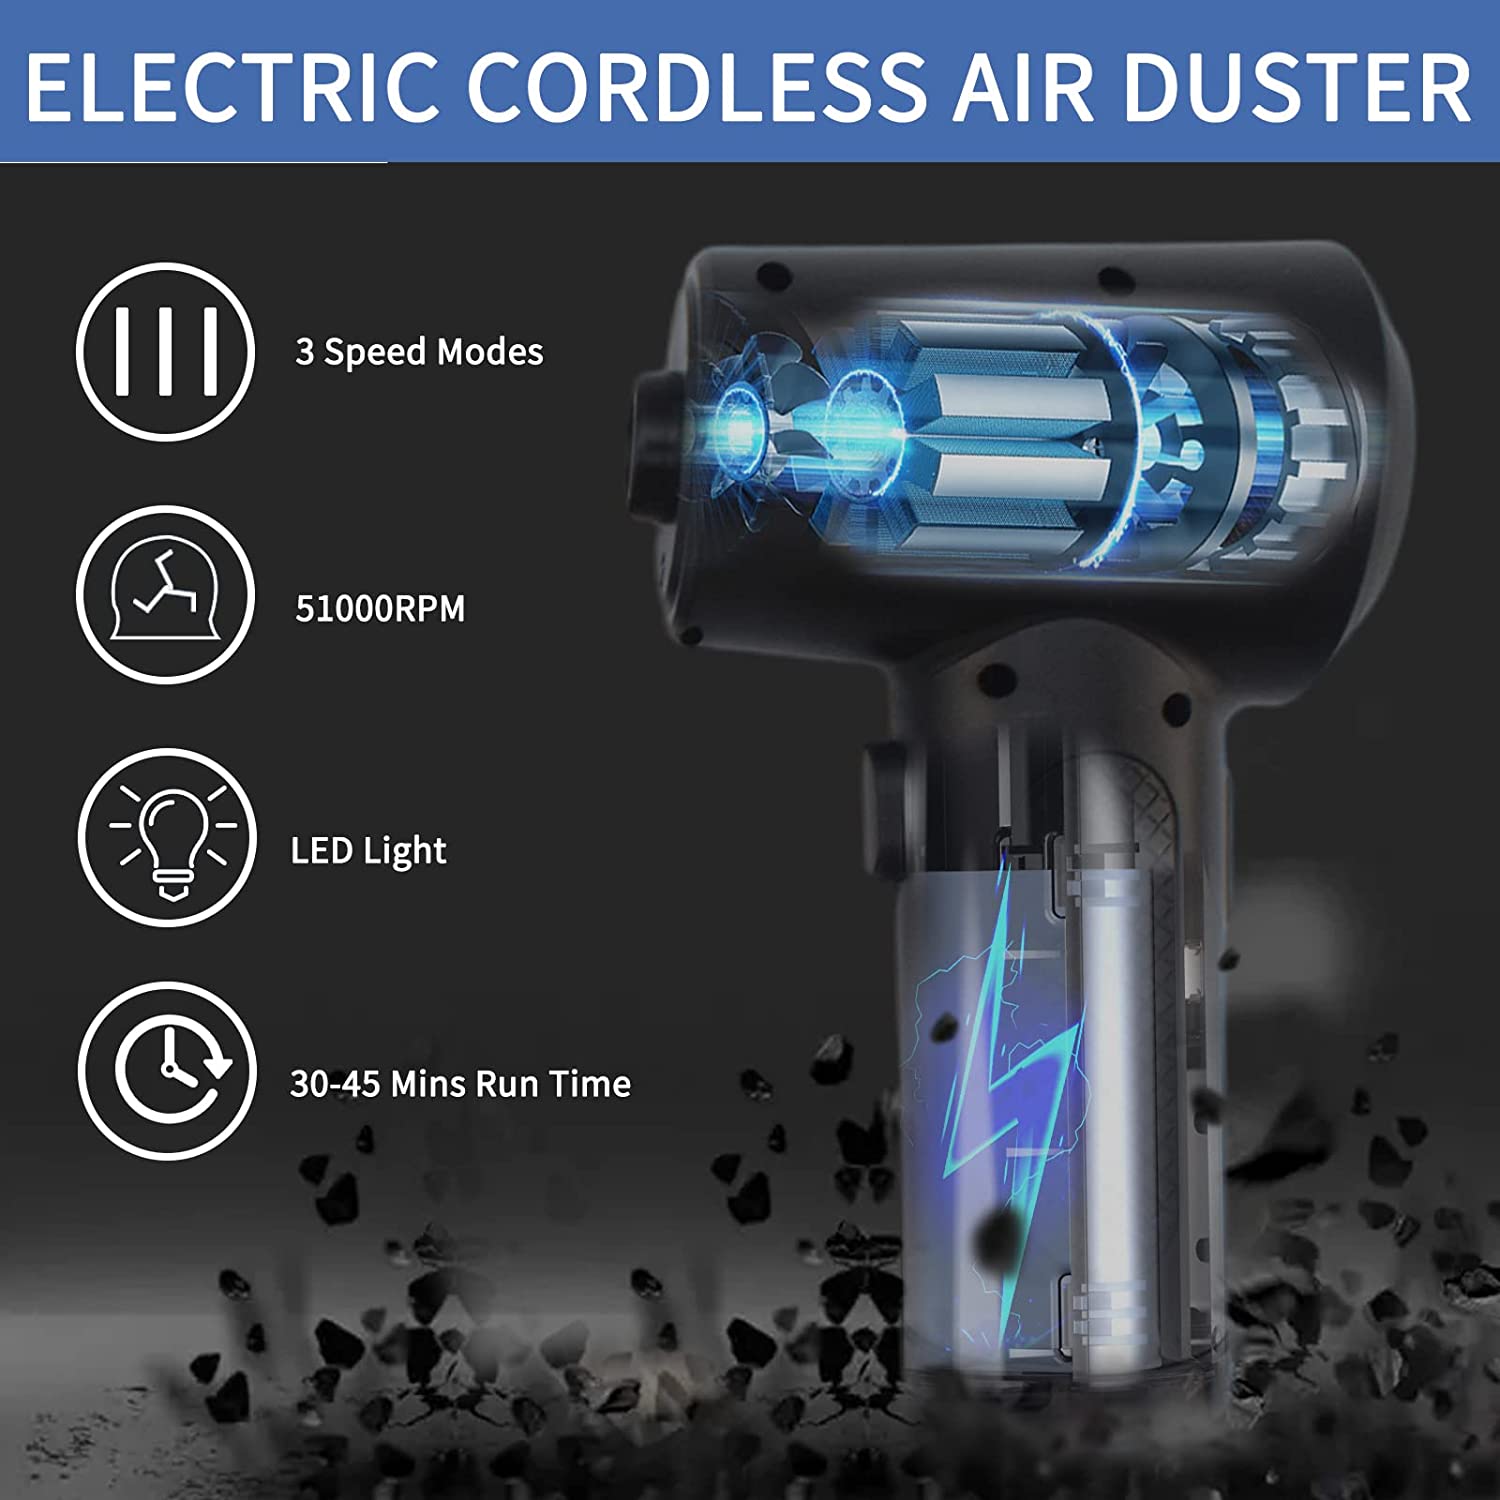 https://getphonery.com/cdn/shop/products/compressed-air-duster-phonery-blowr-compressed-air-duster-18.jpg?v=1666707135